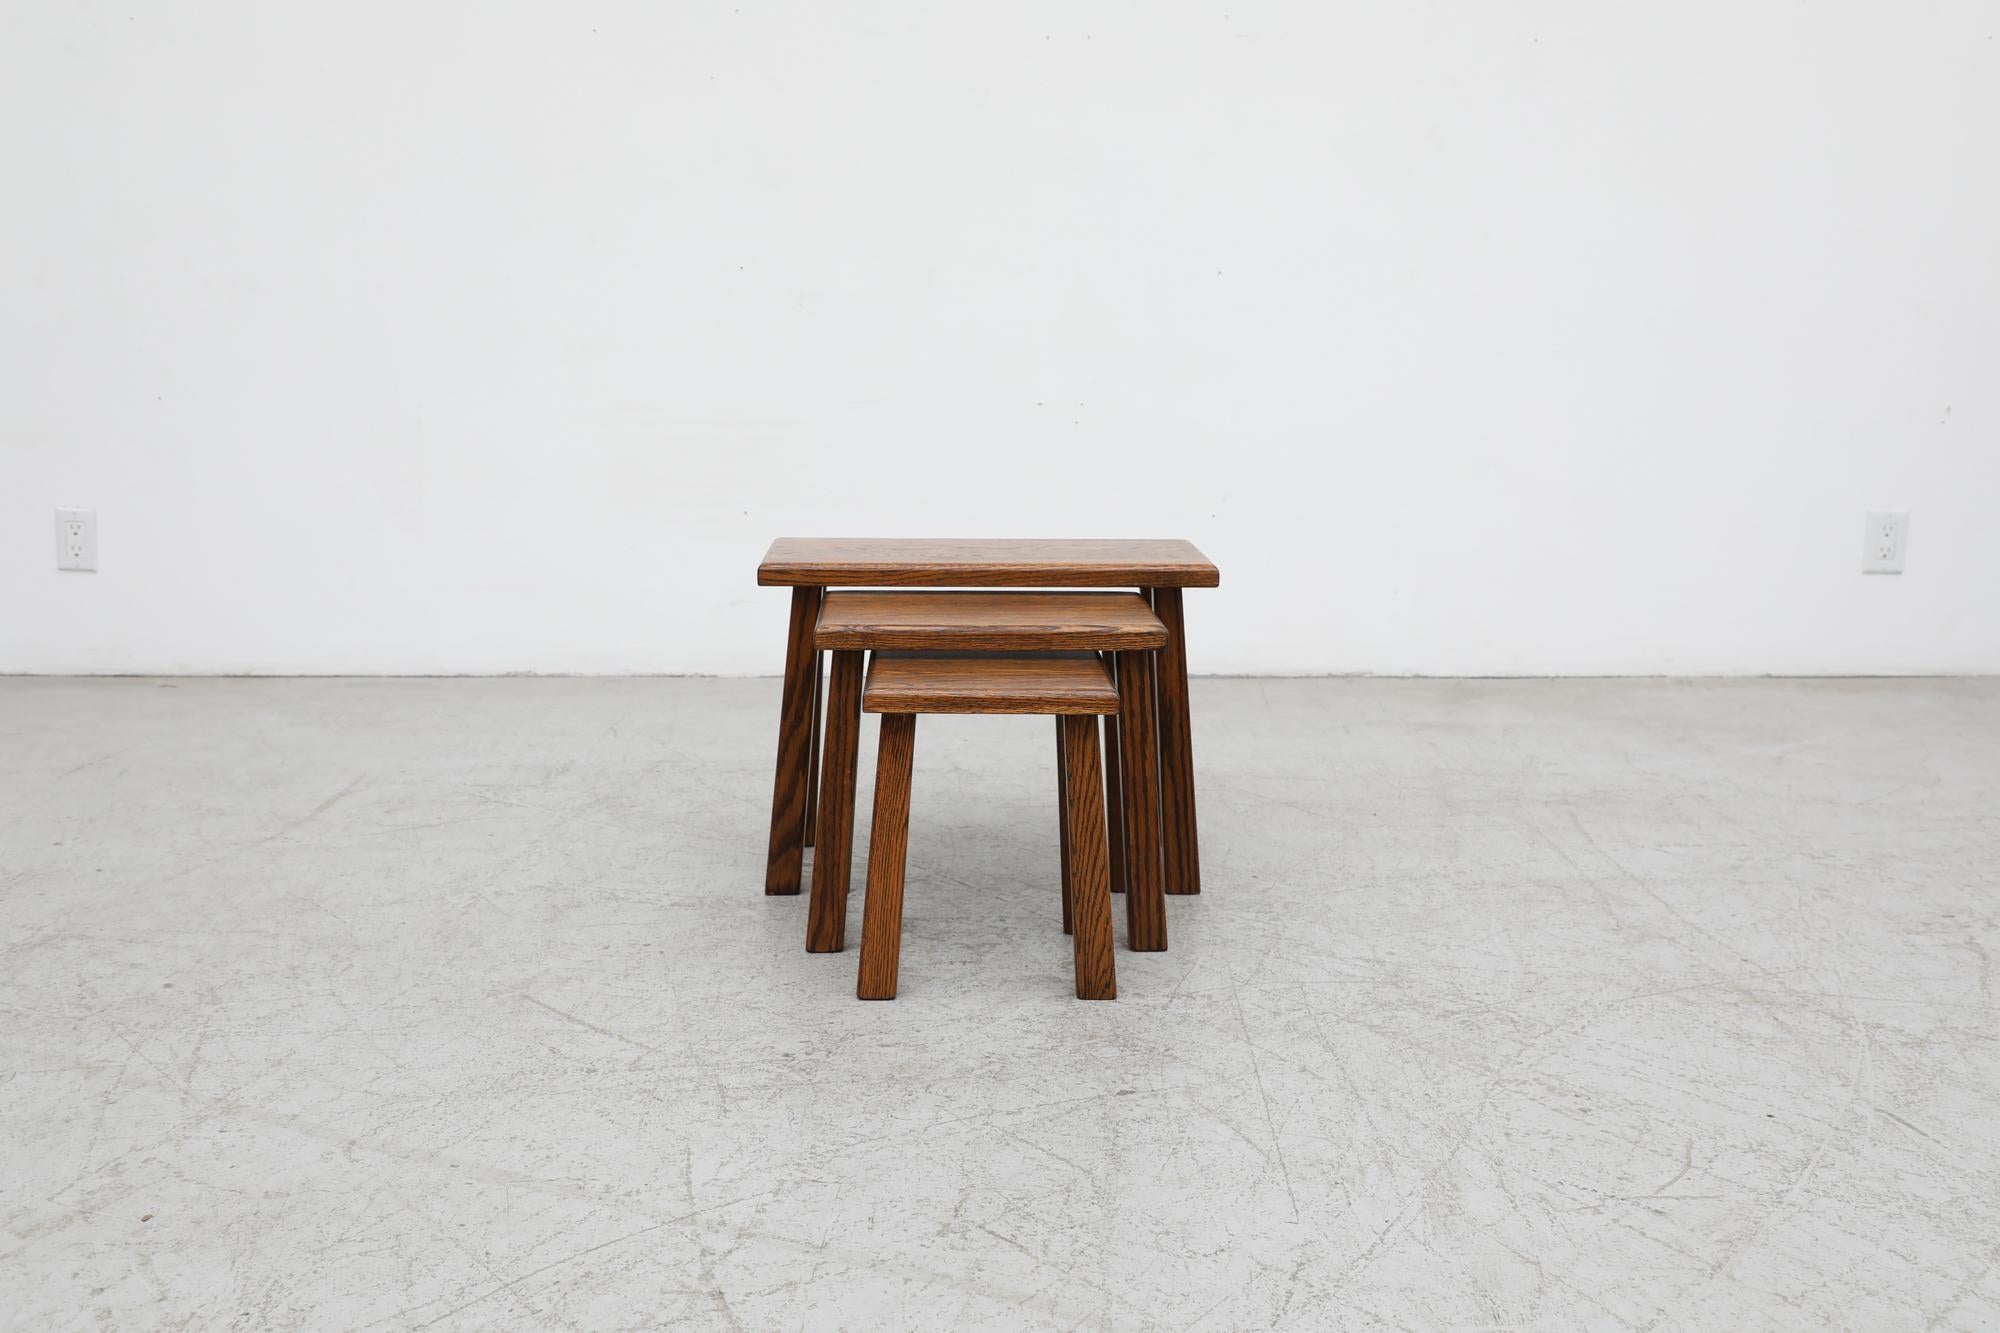 Ensemble de 3 tables gigognes Brutalist en chêne foncé, inspirées par Pierre Chapo, avec des pieds hauts et carrés. Le chêne a un beau grain en forme de 